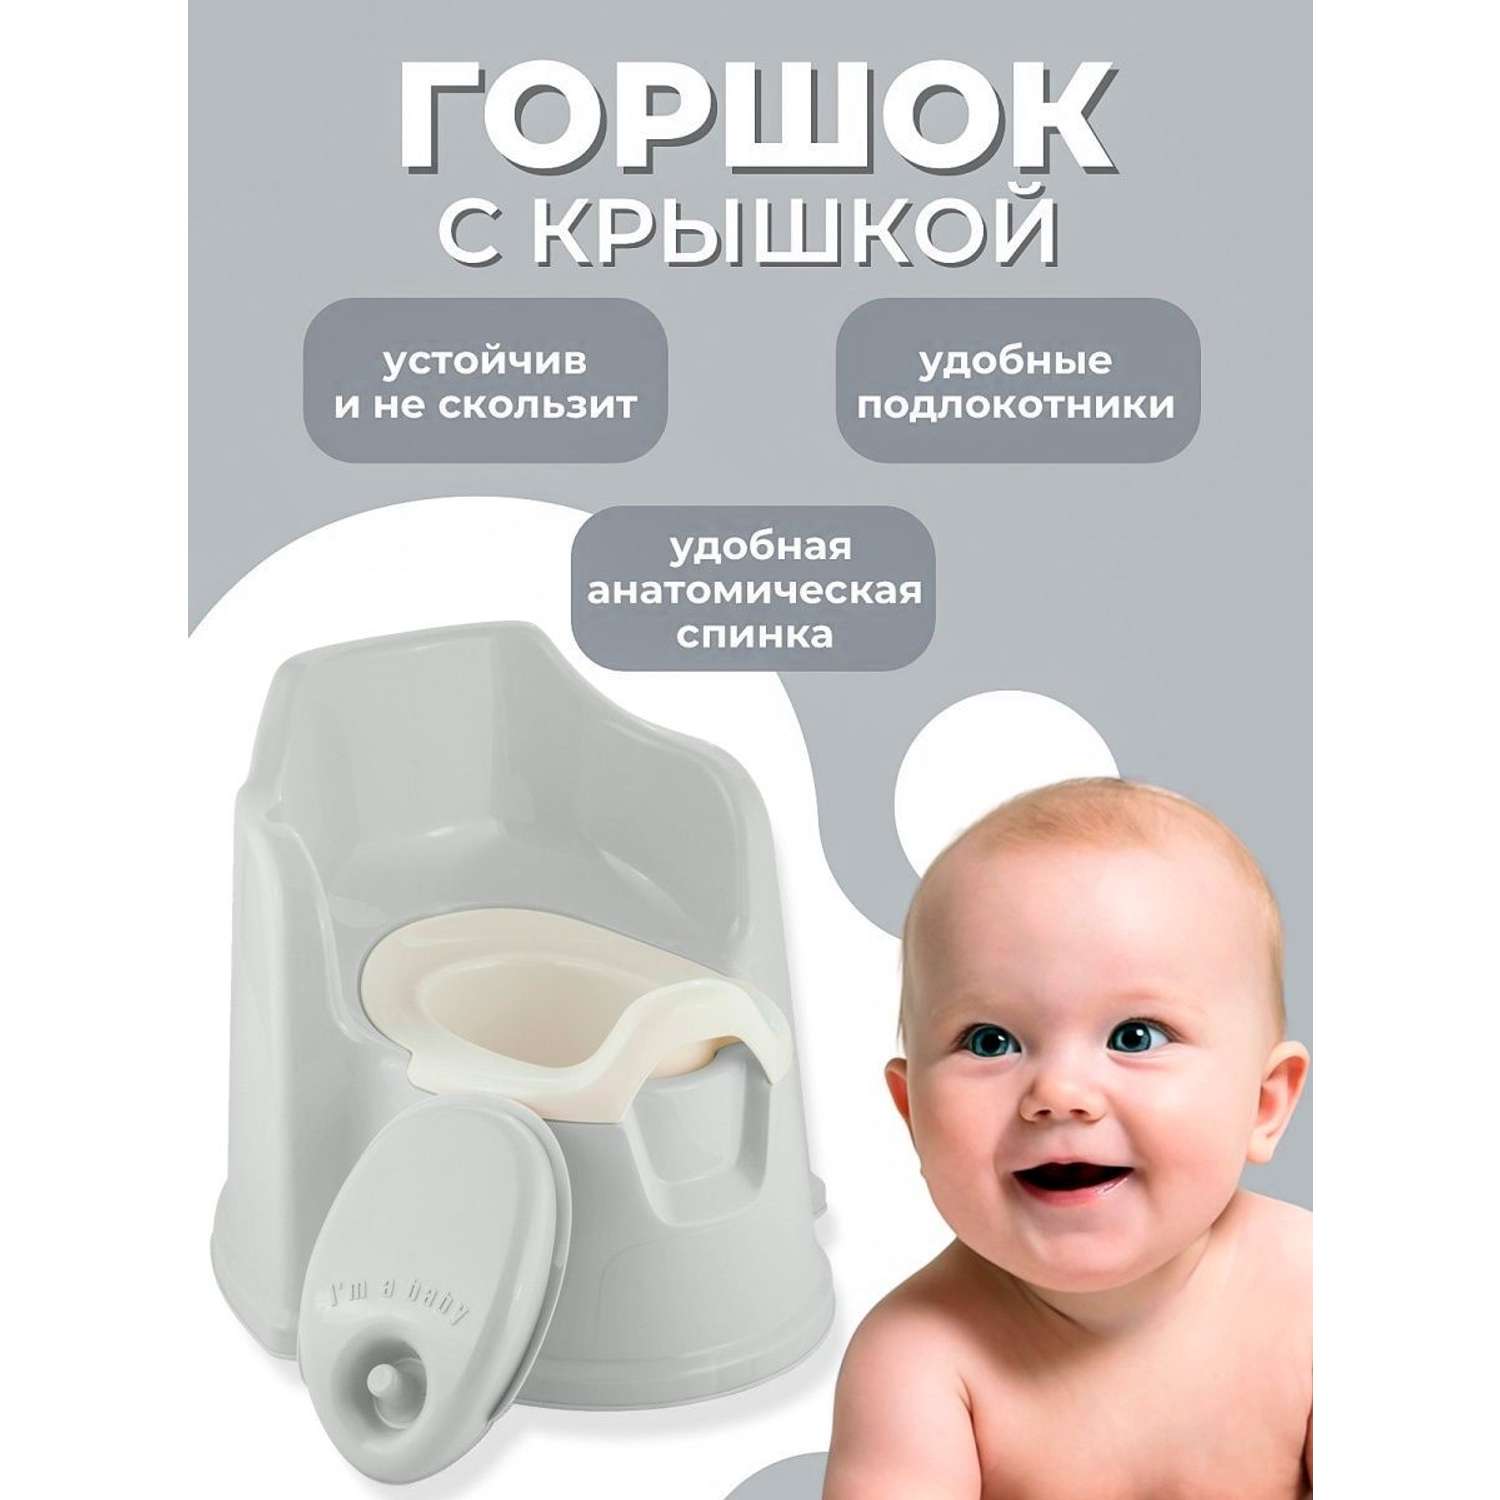 Горшок детский PLASTIC REPABLIC baby с крышкой стульчик пластиковый серый с крышкой - фото 2